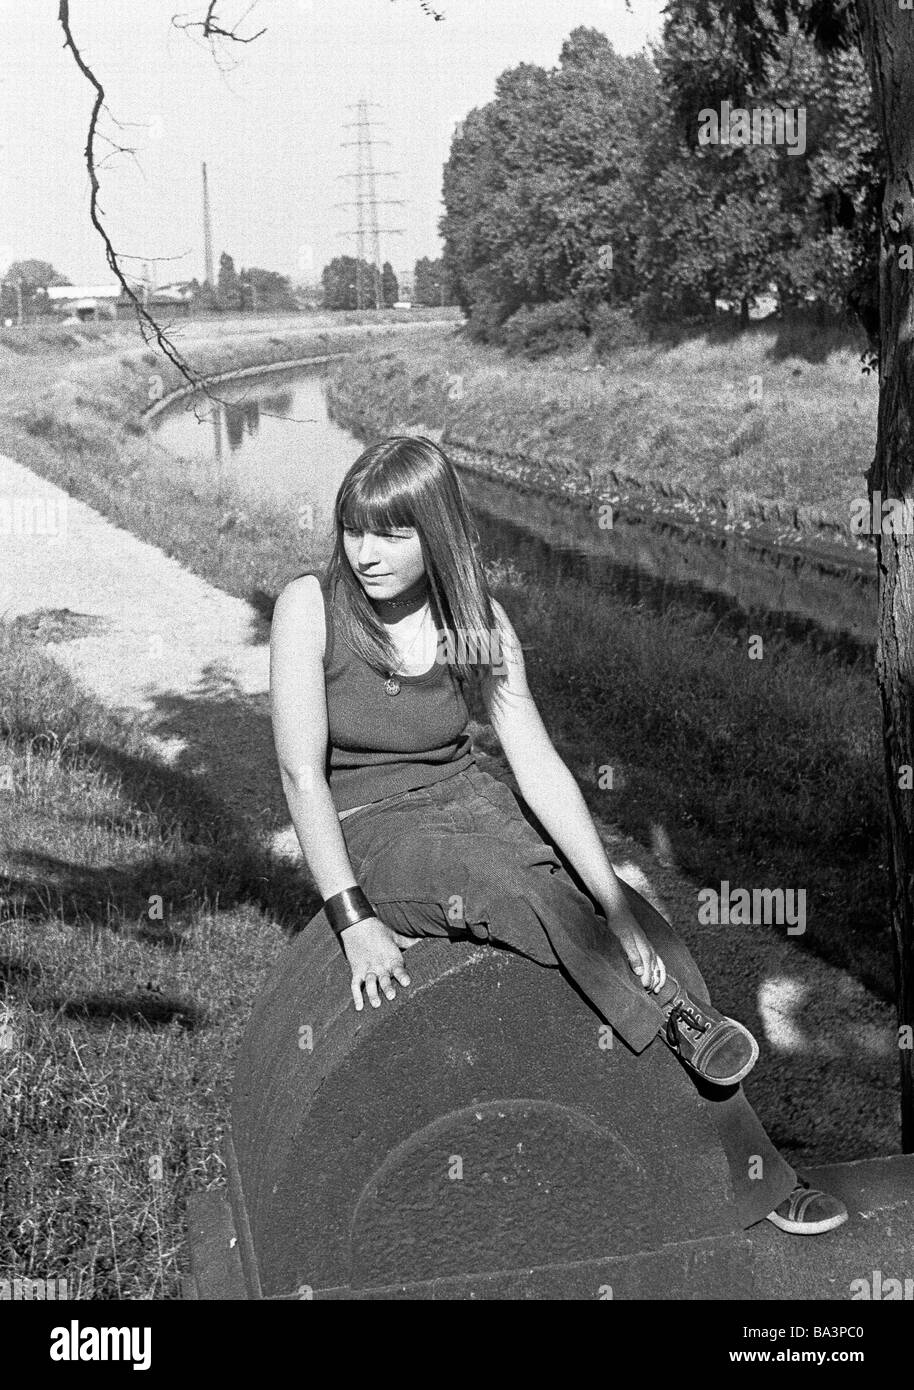 Negli anni settanta, foto in bianco e nero, persone giovane ragazza si siede vicino a un fiume, Emscher, Bottrop, la zona della Ruhr, Renania settentrionale-Vestfalia, di età compresa tra 12 a 14 anni Foto Stock